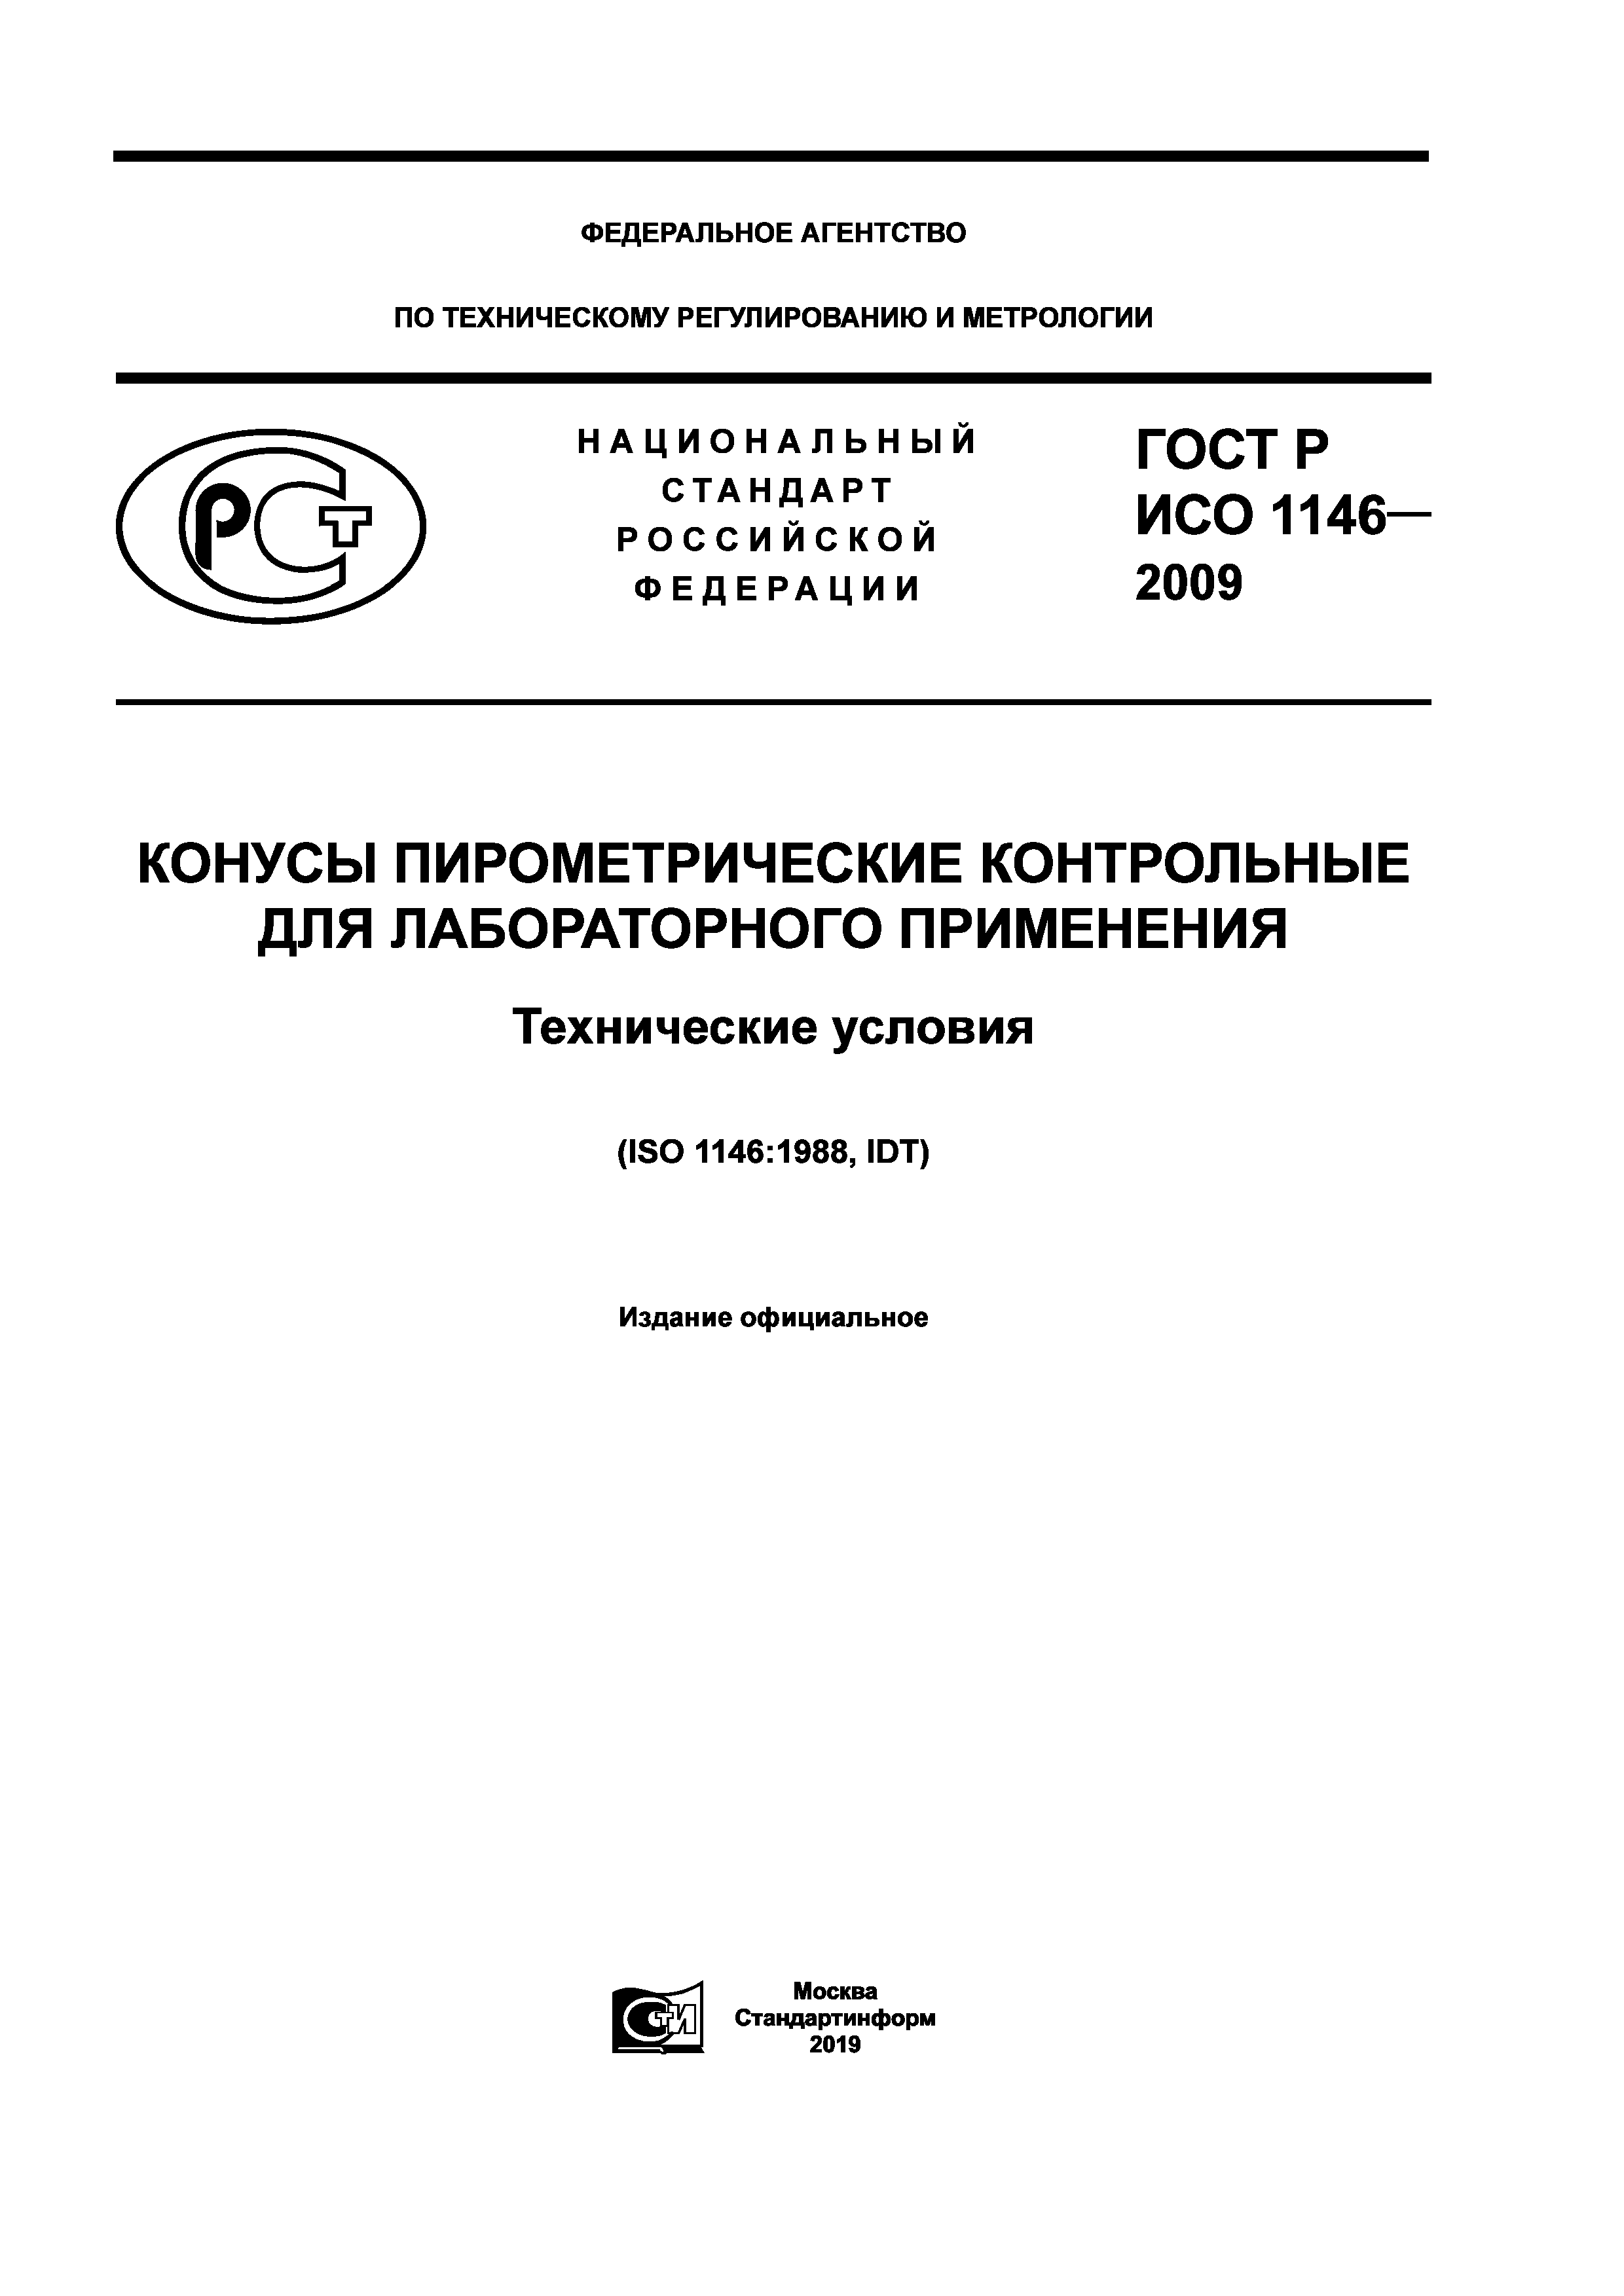 ГОСТ Р ИСО 1146-2009